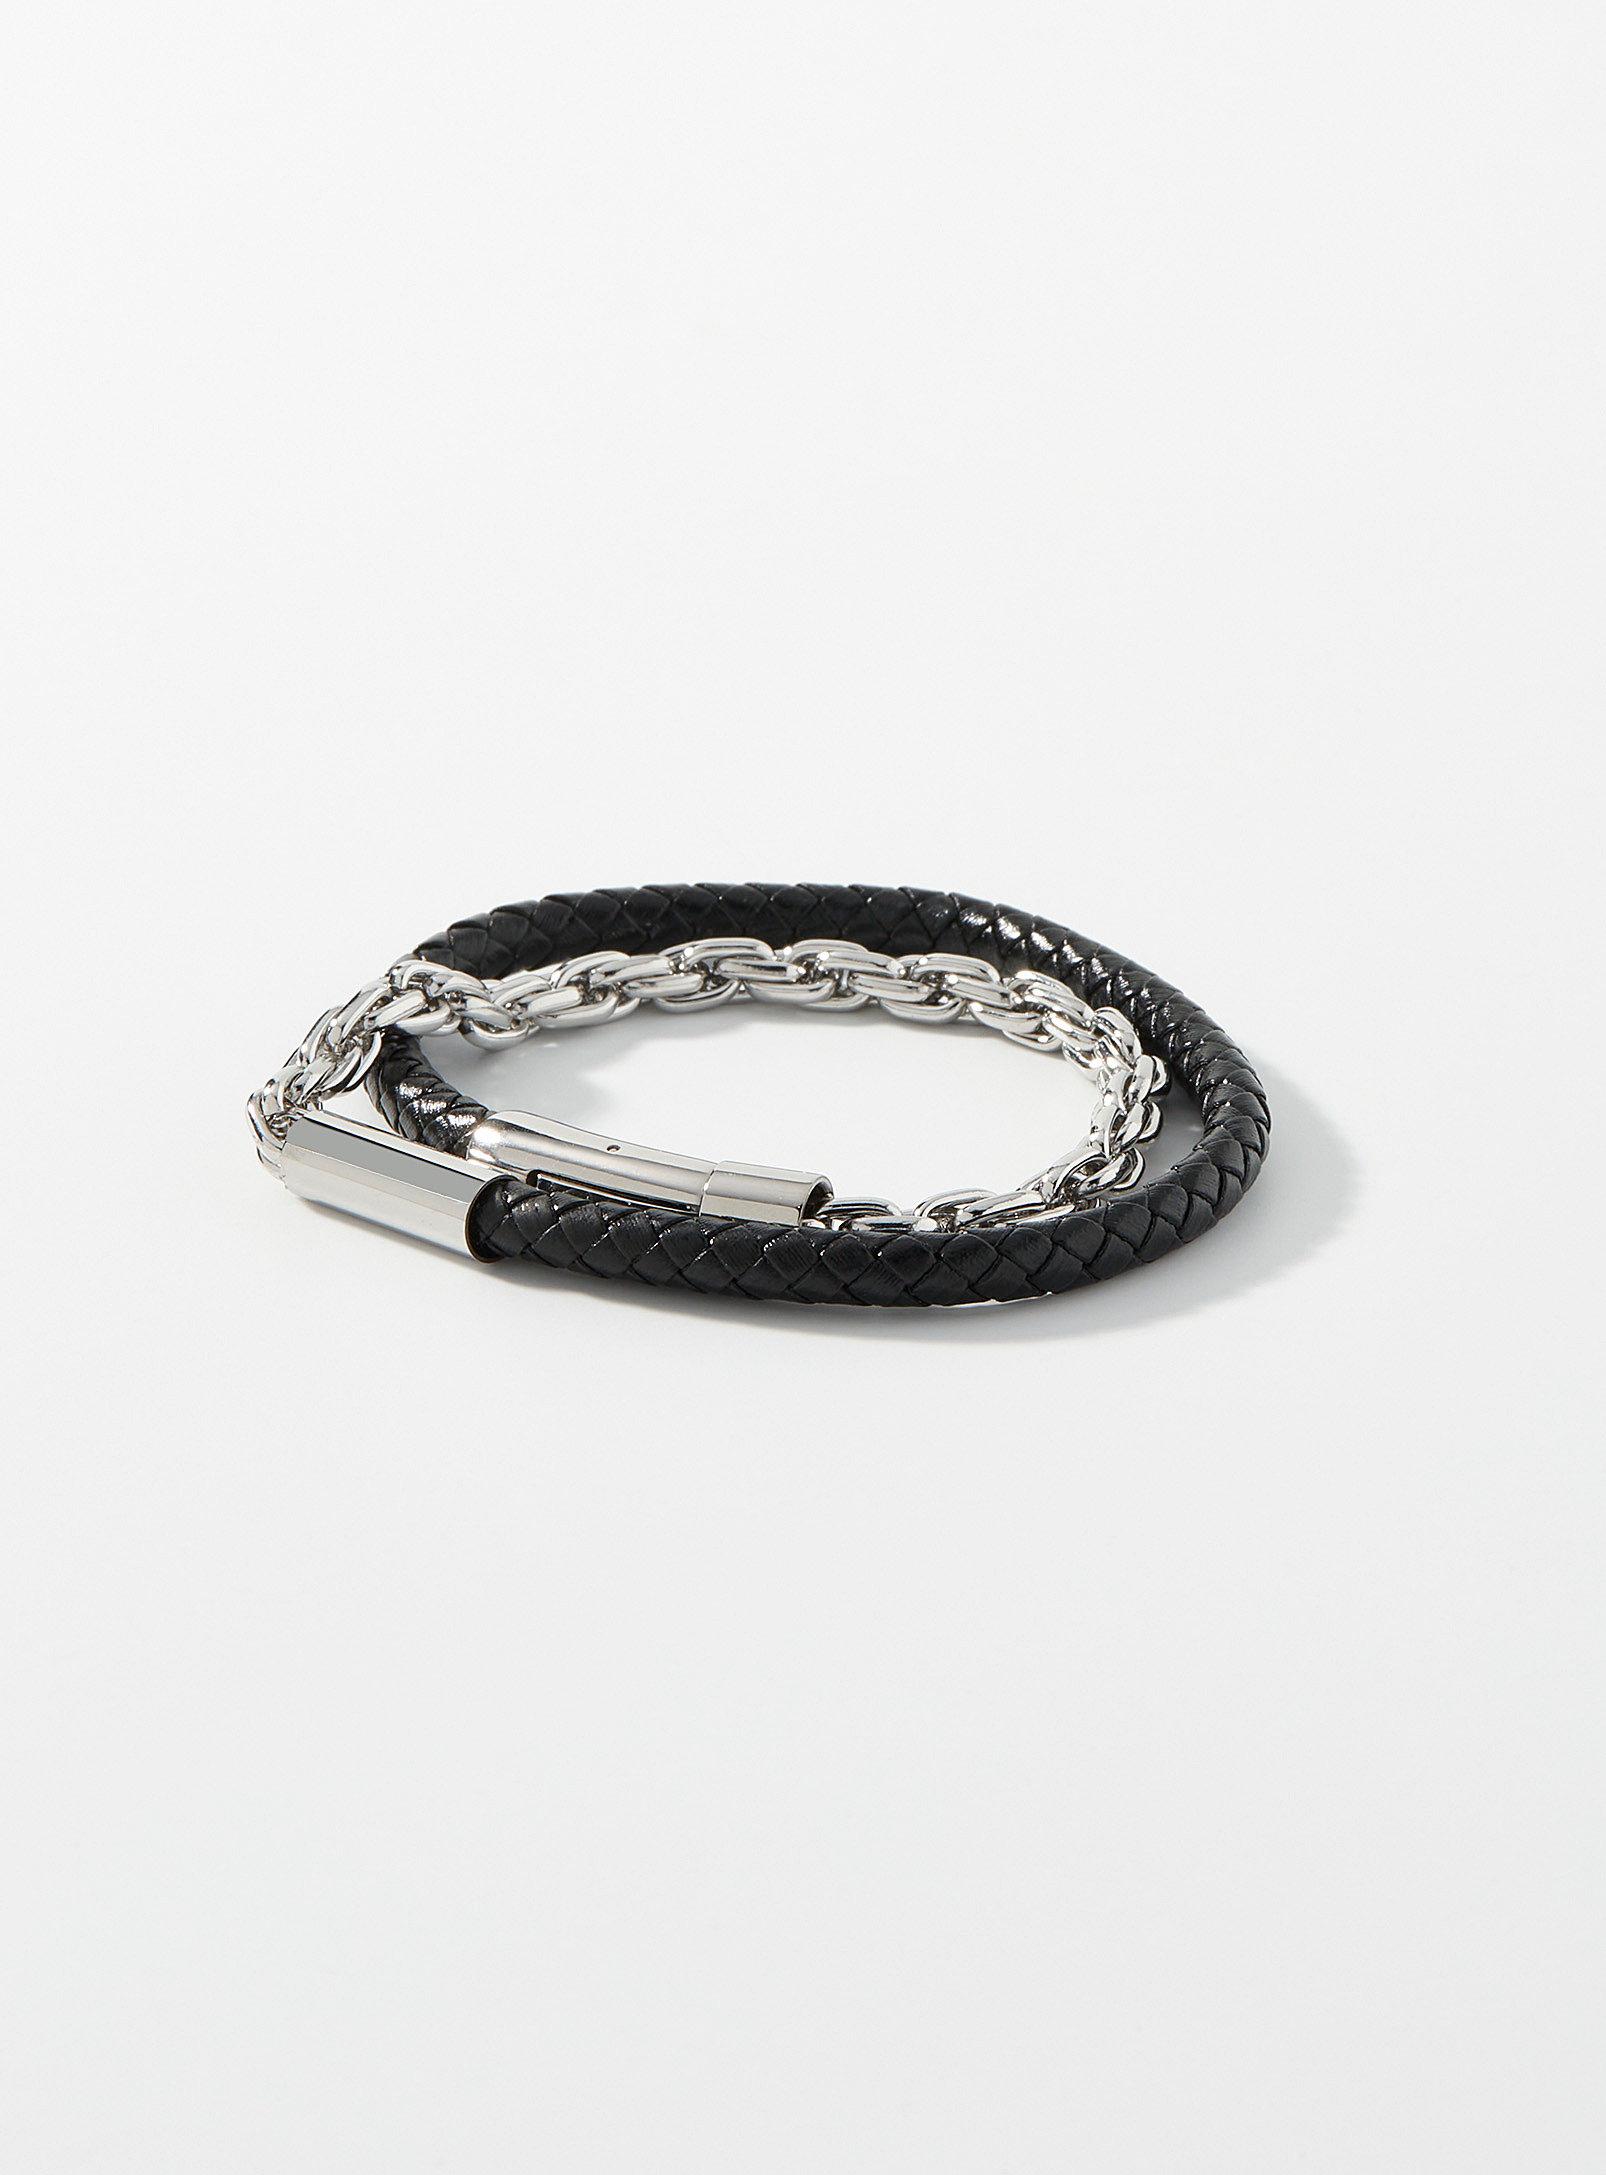 Le 31 - Le bracelet double rang cuir et chaîne